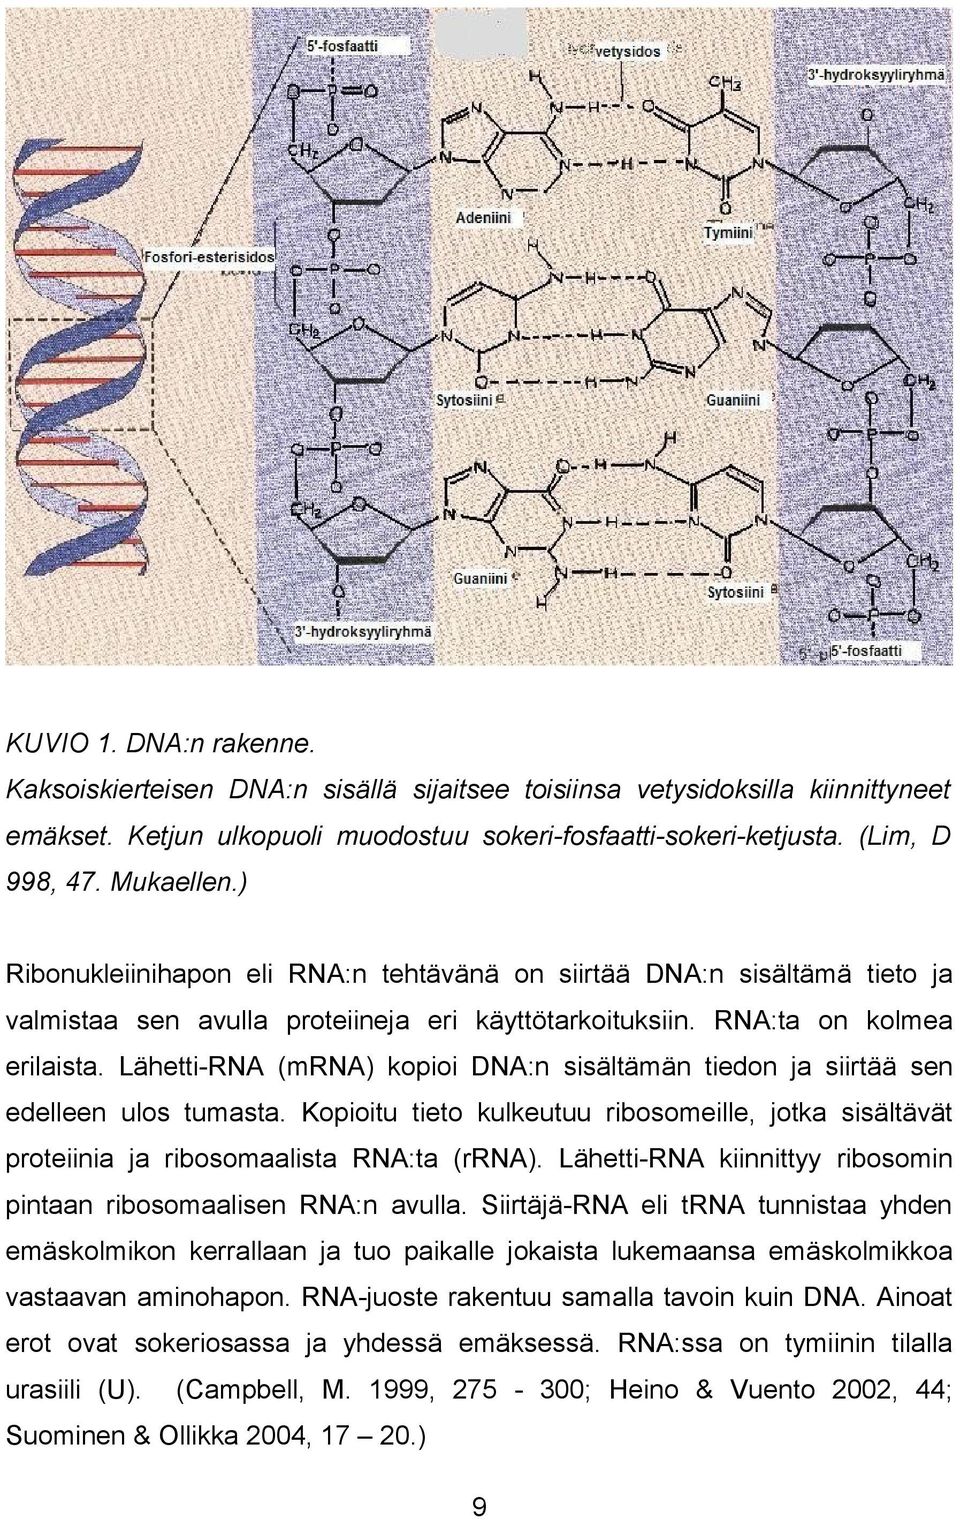 Lähetti-RNA (mrna) kopioi DNA:n sisältämän tiedon ja siirtää sen edelleen ulos tumasta. Kopioitu tieto kulkeutuu ribosomeille, jotka sisältävät proteiinia ja ribosomaalista RNA:ta (rrna).